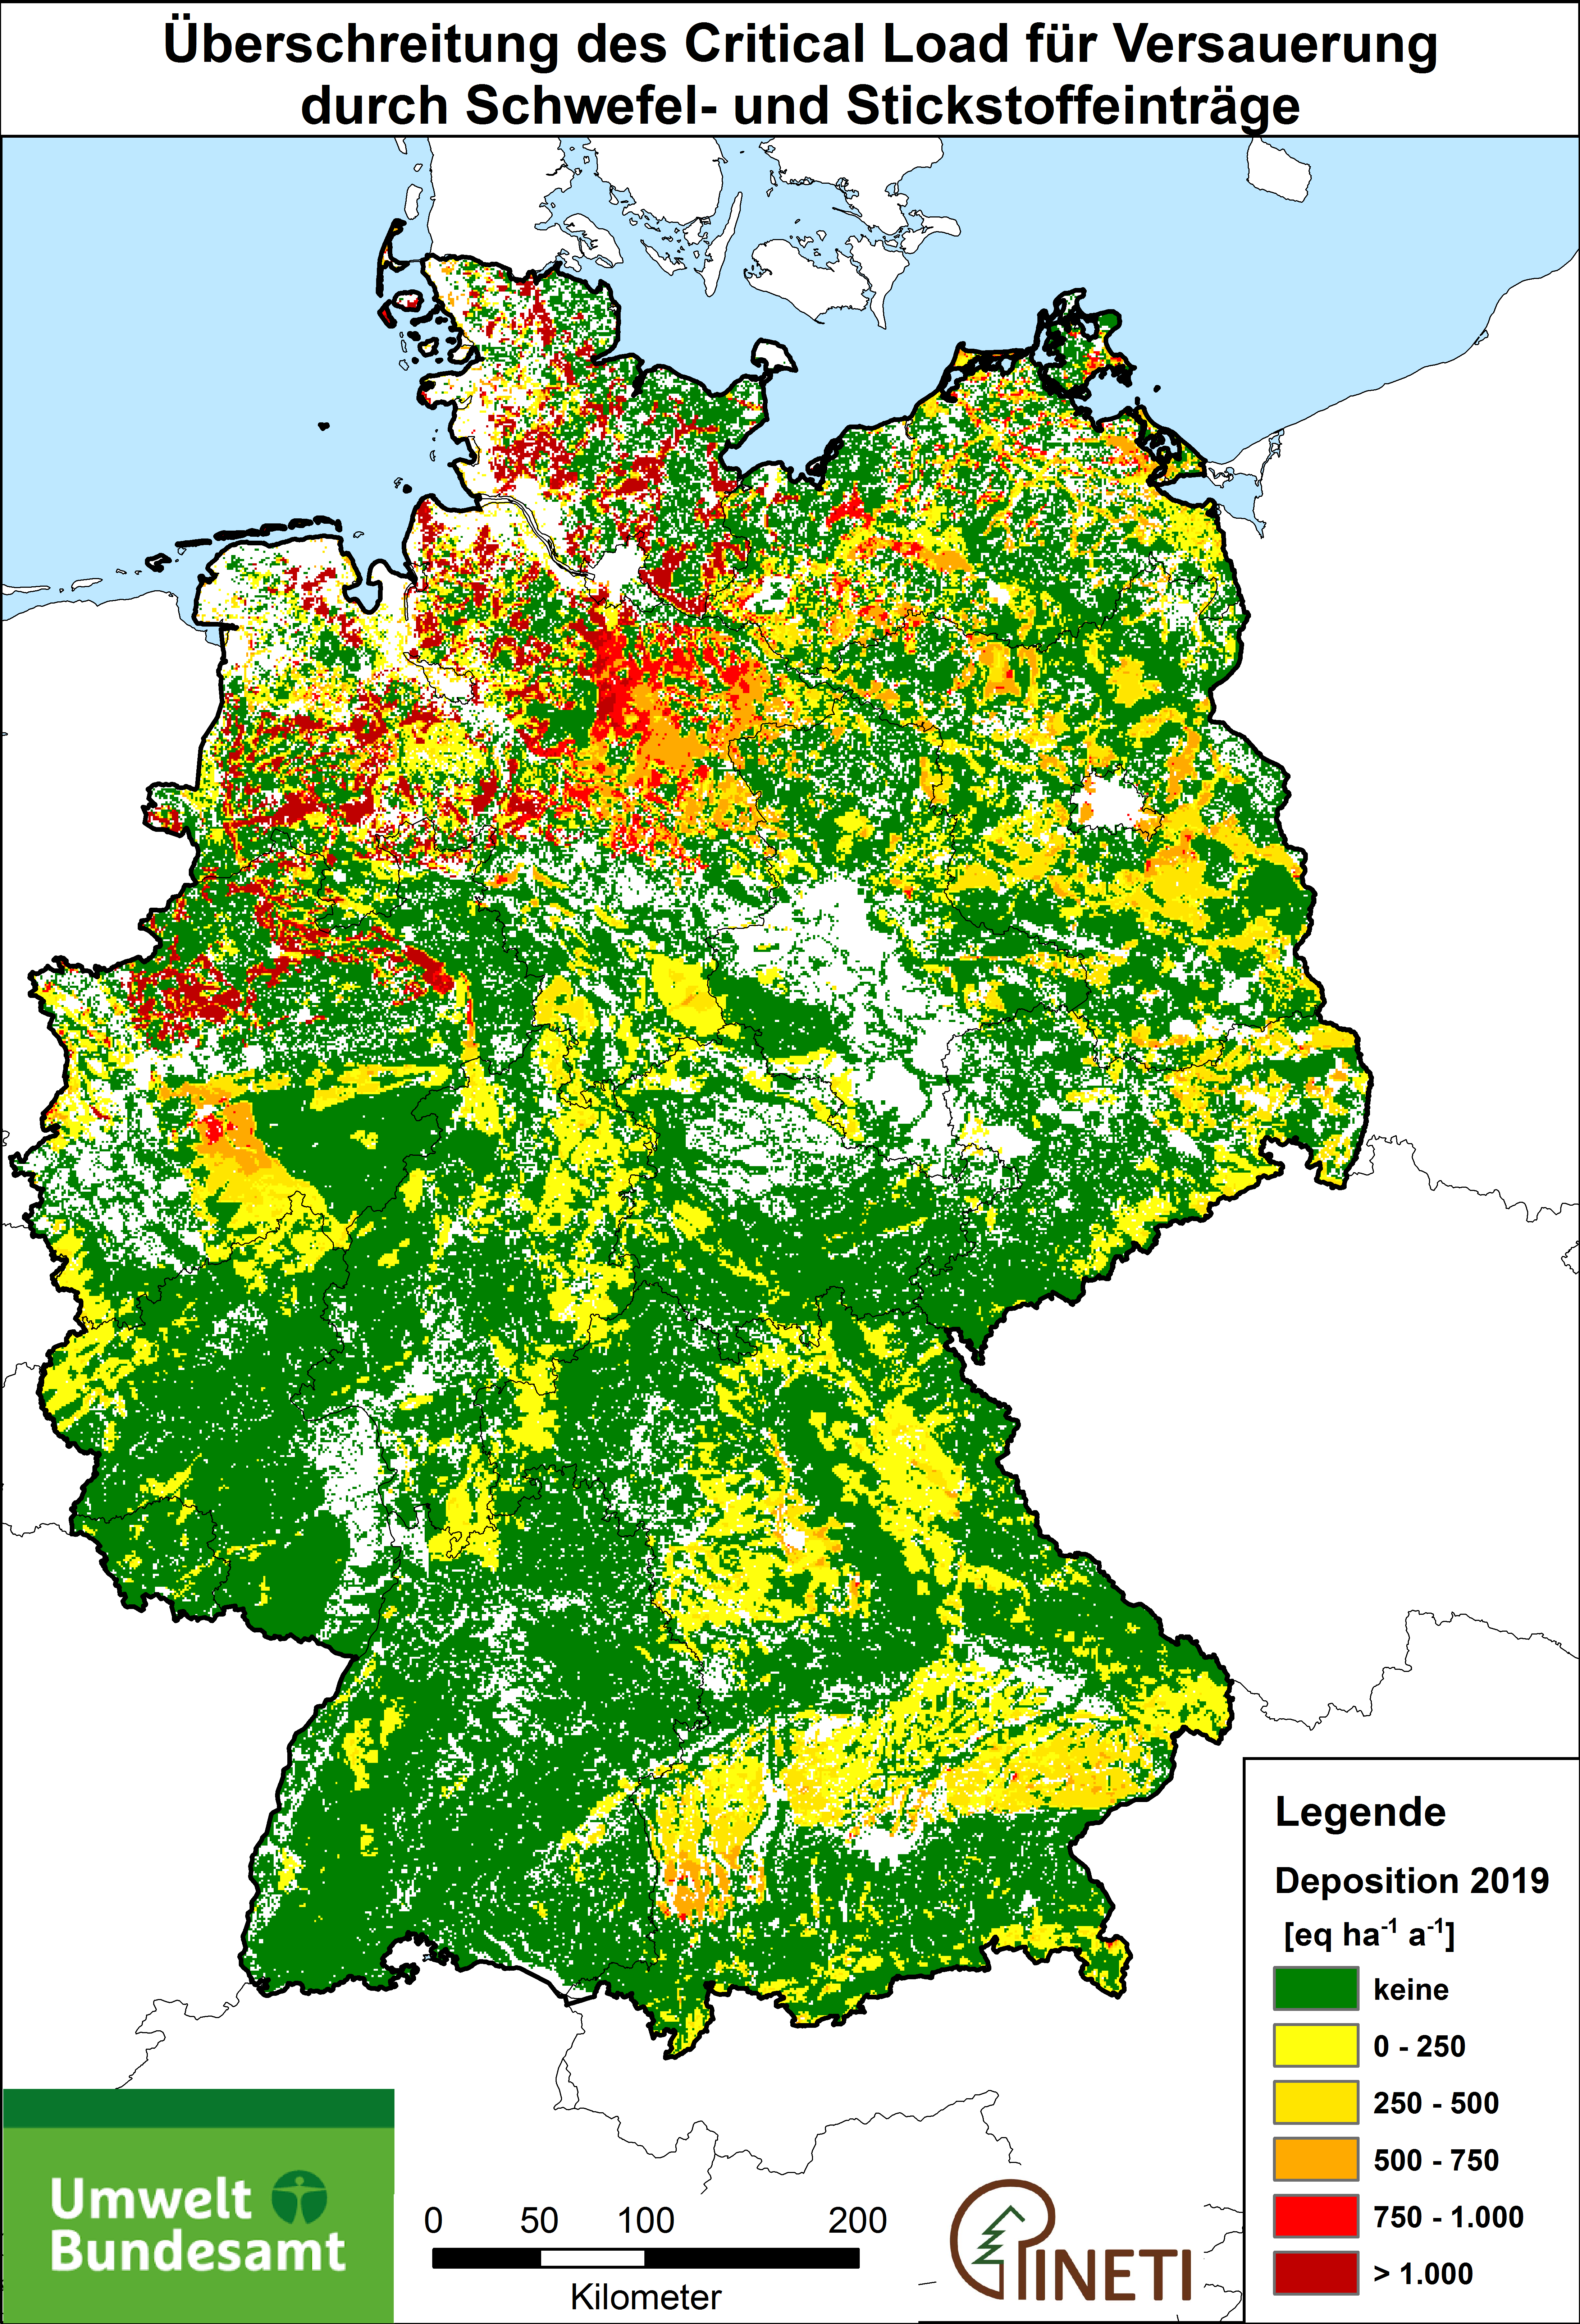 Die Abbildung zeigt eine Deutschlandkarte mit der räumlichen Verteilung von Flächen, die eine Überschreitung der ökologischen Belastungsgrenzen für Versauerung im Jahre 2019 aufweisen.